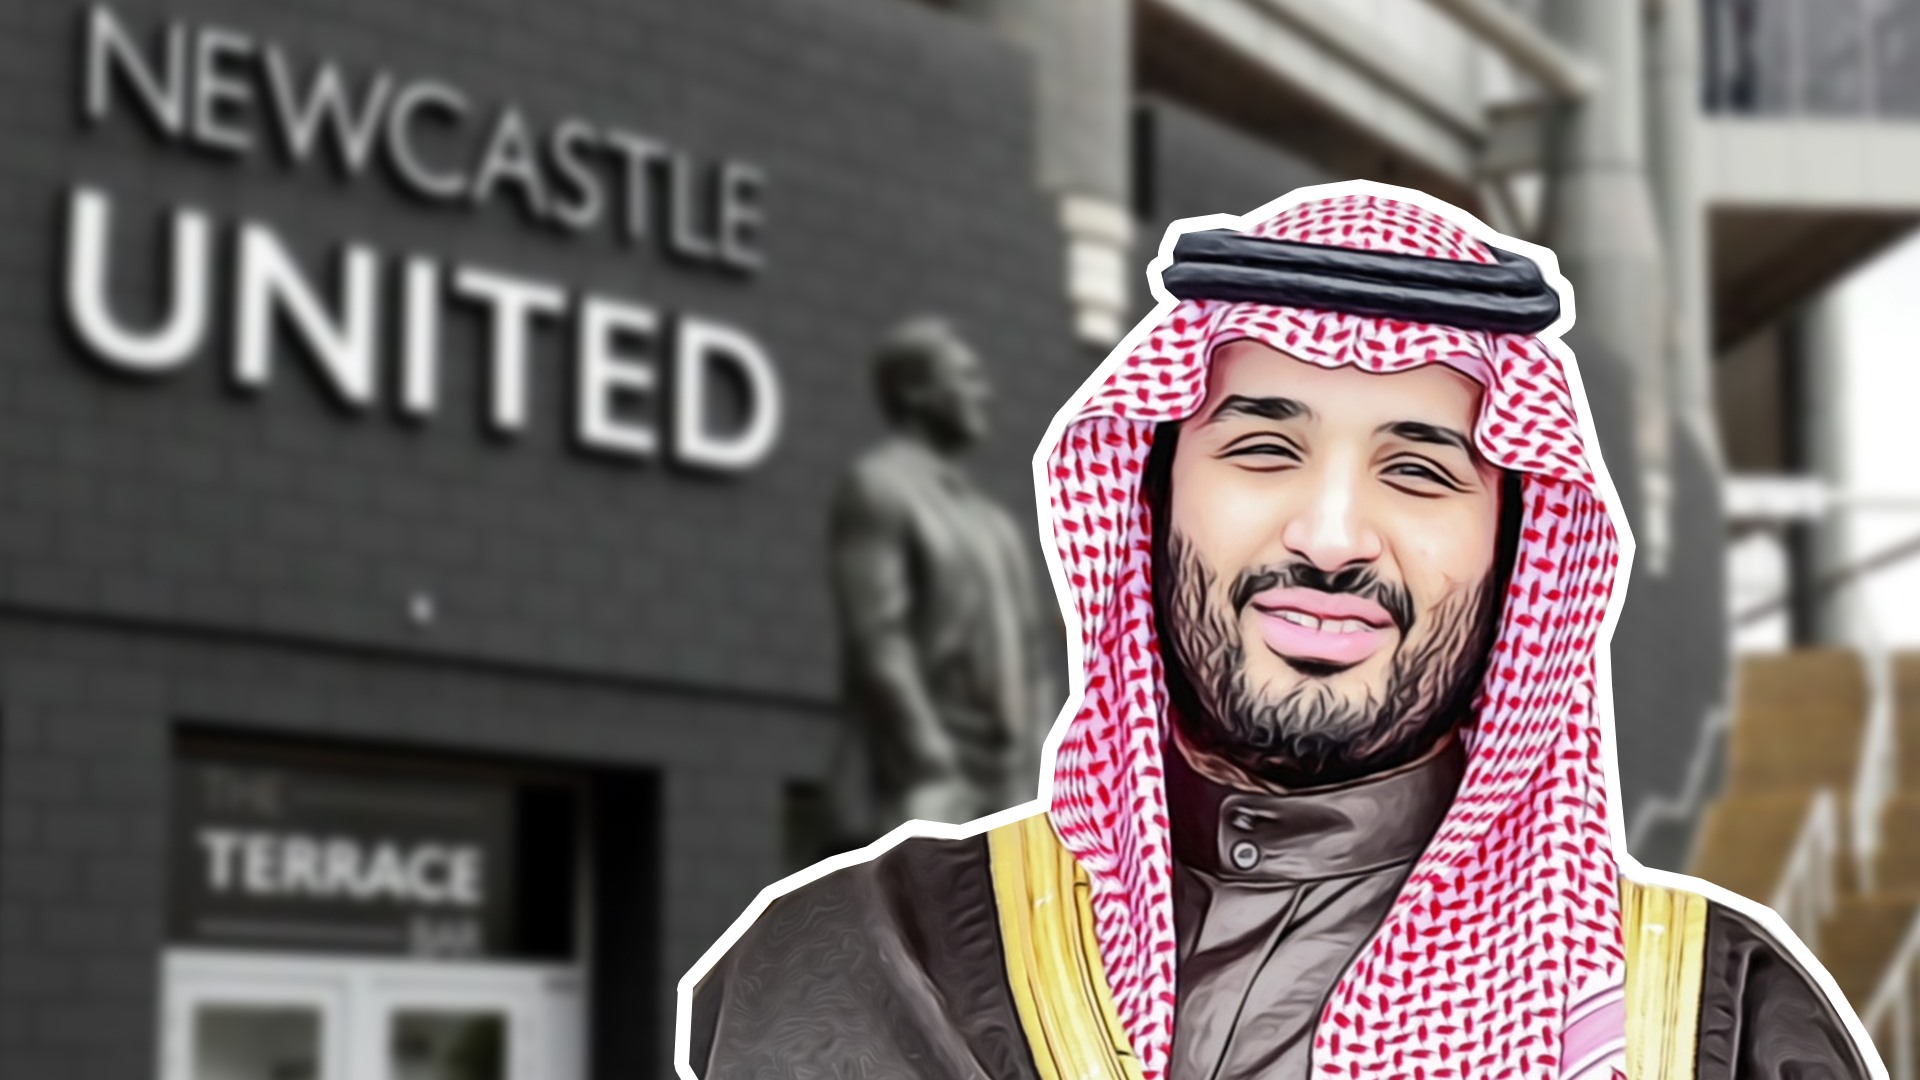 Hoàng gia Saudi Arabia không được phép can thiệp vào công việc nội bộ của Newcastle. Ảnh thiết kế: Việt Hùng